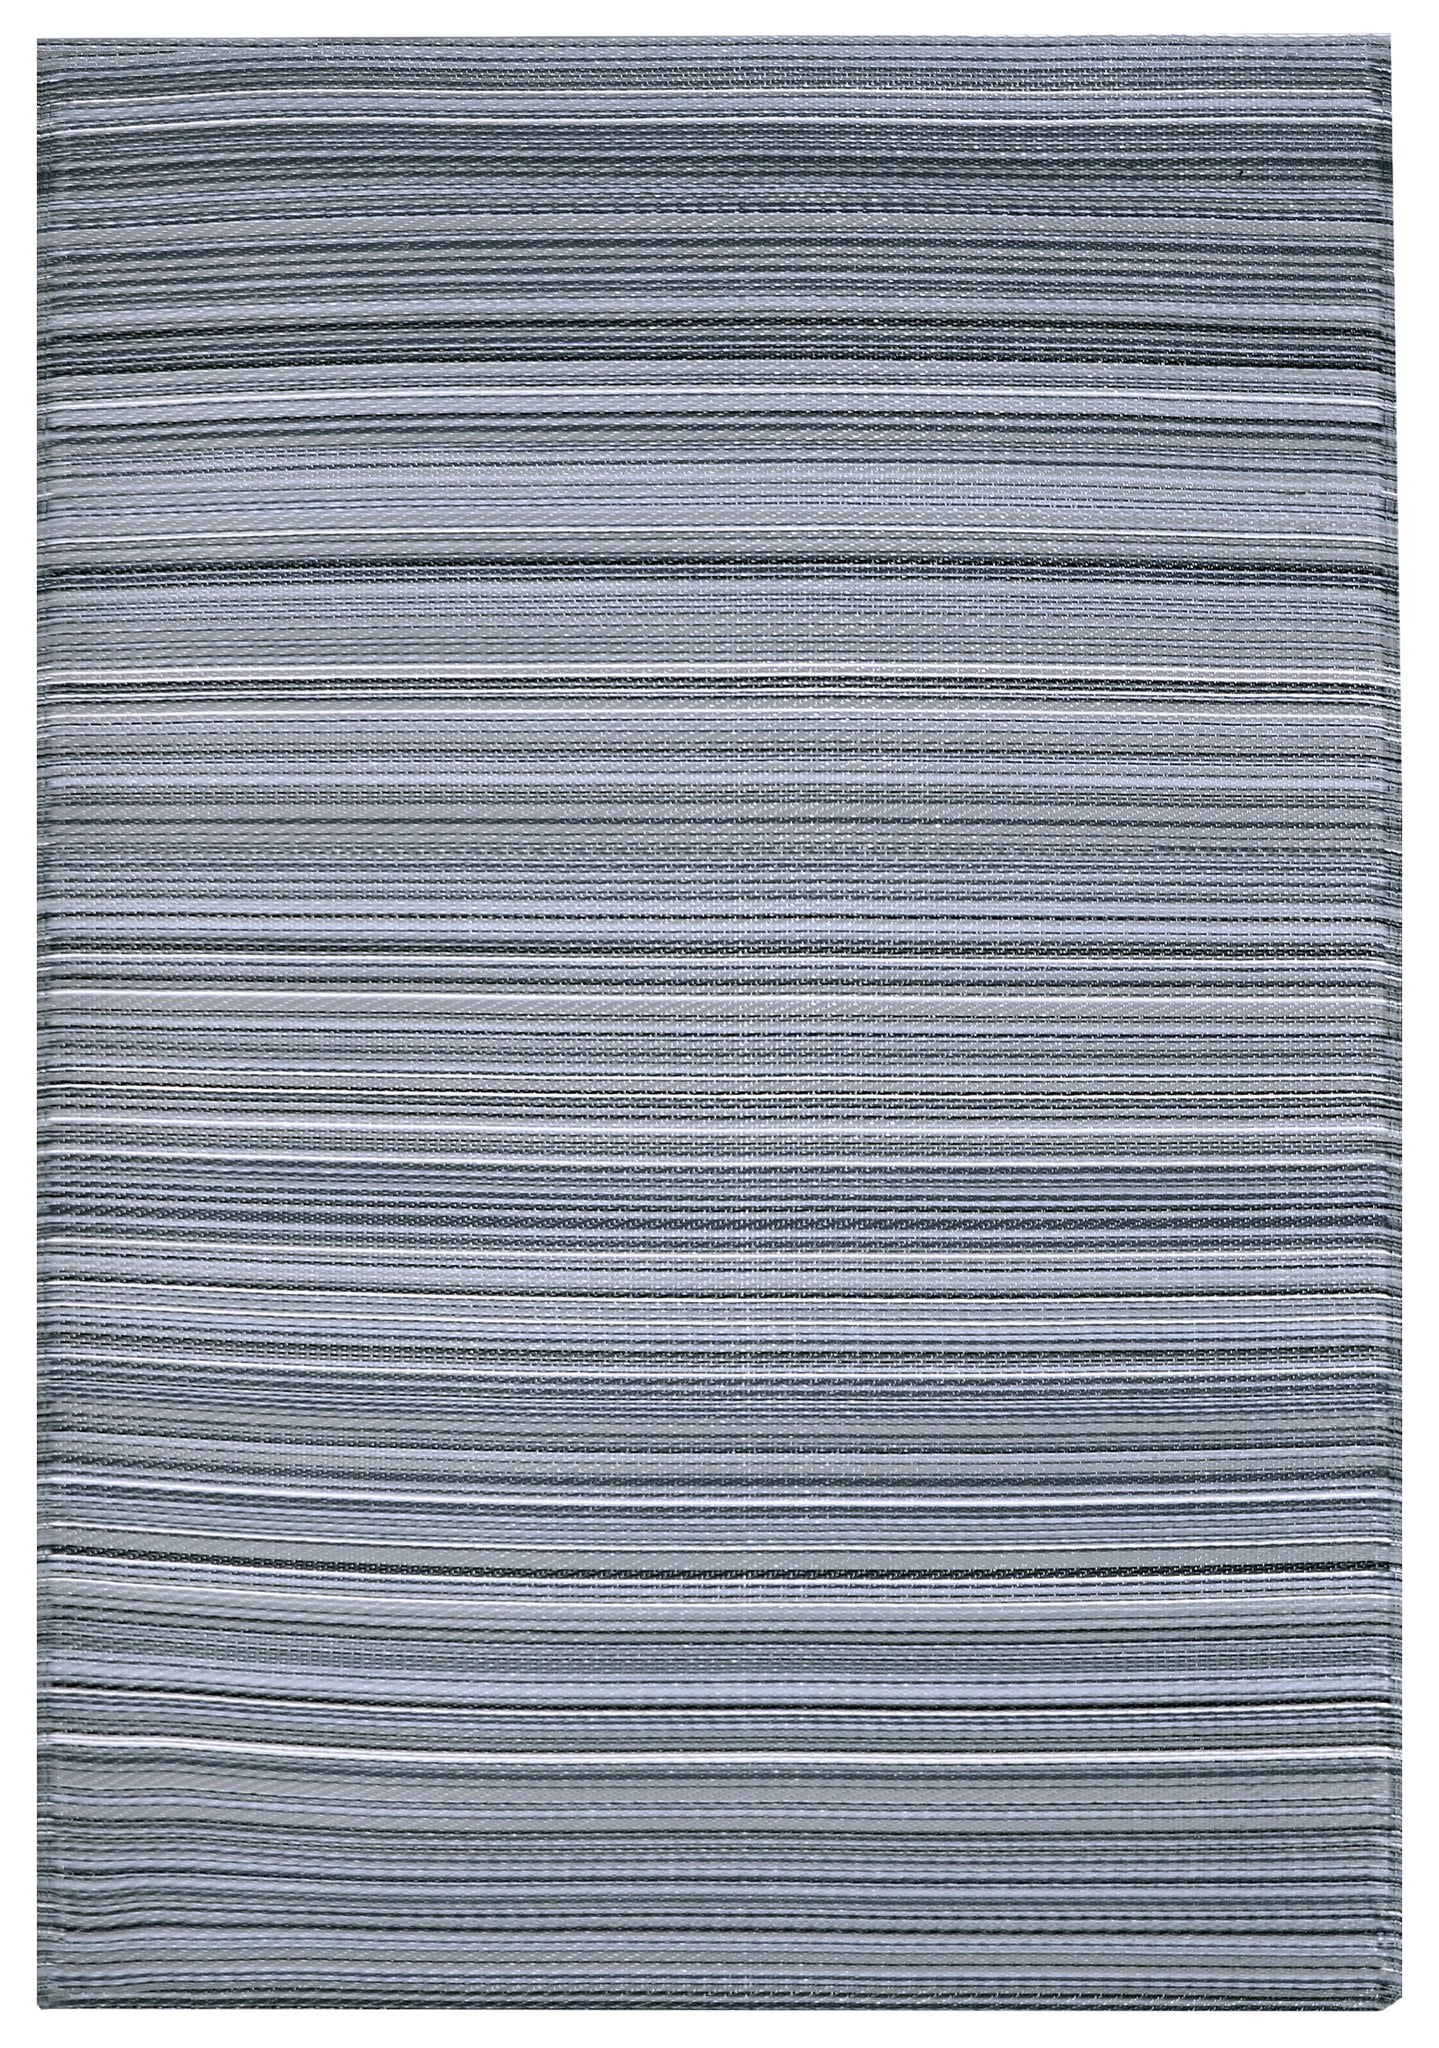 Indoor/Outdoor Grey Stripes Reversible Rug Outdoor Area Rug, Outdoor carpet, outdoor mat, picnic mat